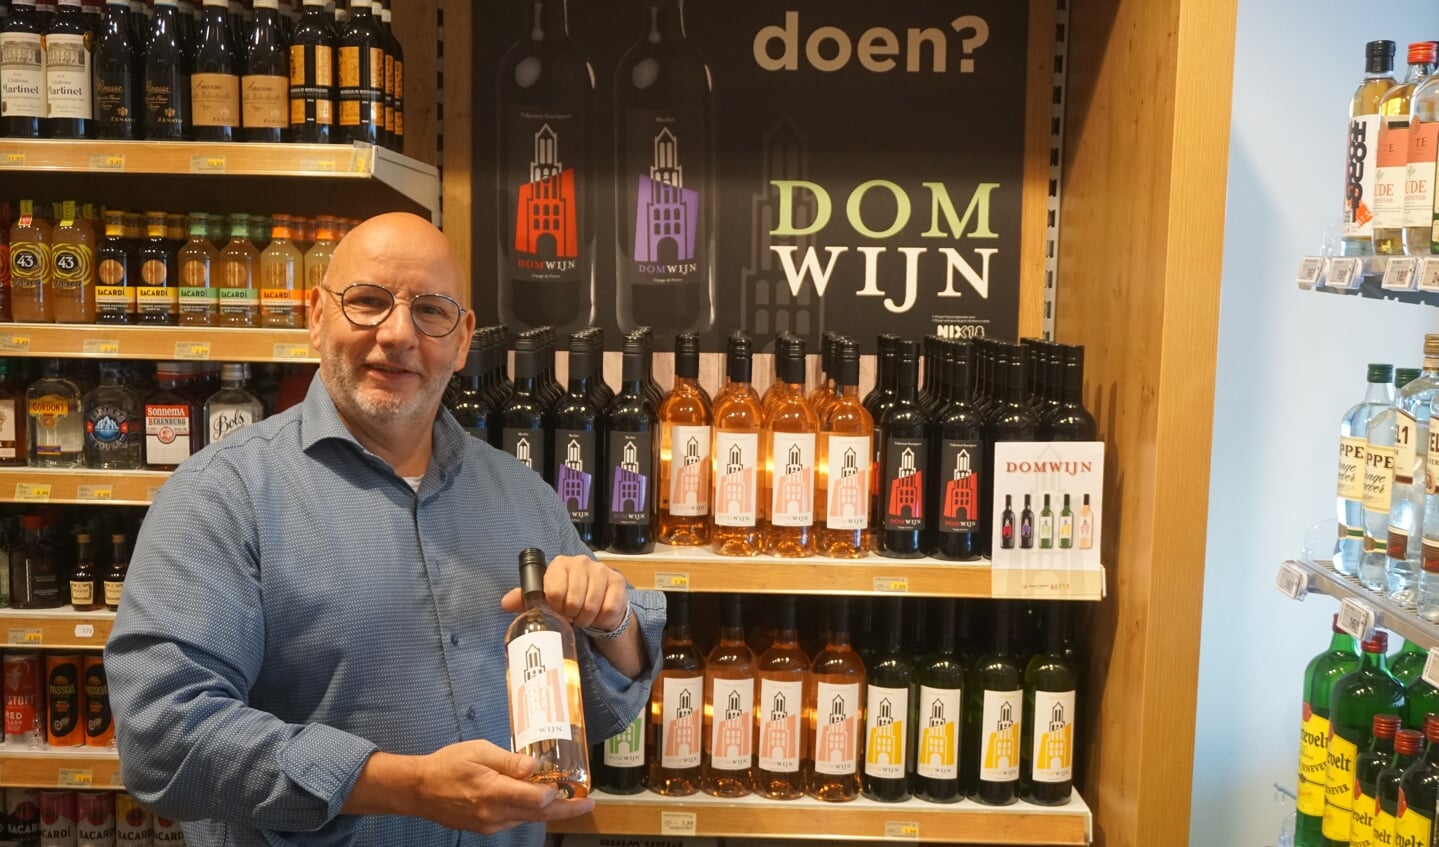 Christ van Loon: "Gek op Utrecht, dus we drinken Domwijn."